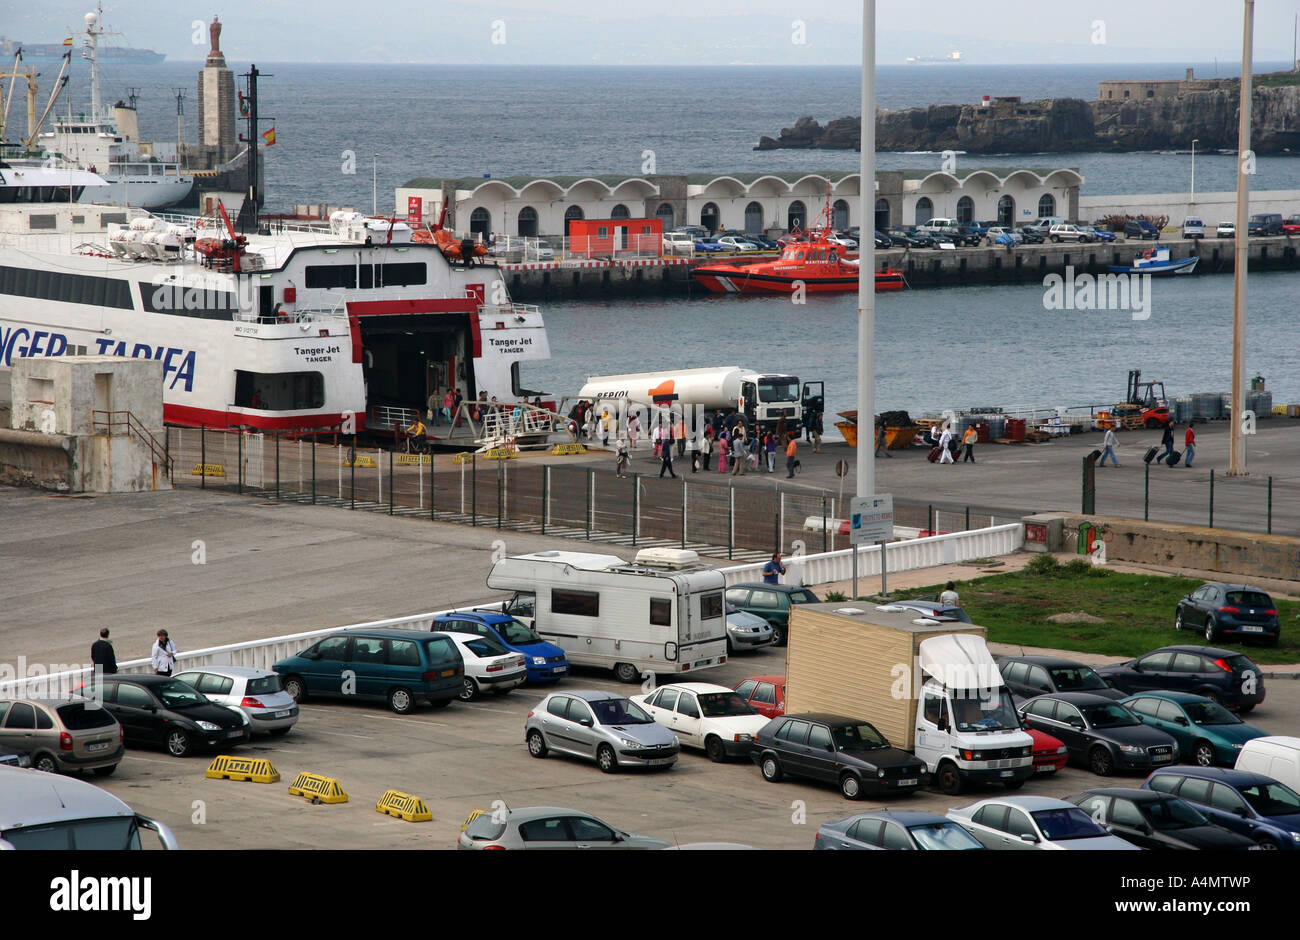 Tangier to Tarifa ferry. Tarifa Harbor, Tarifa, Southern Spain Stock Photo